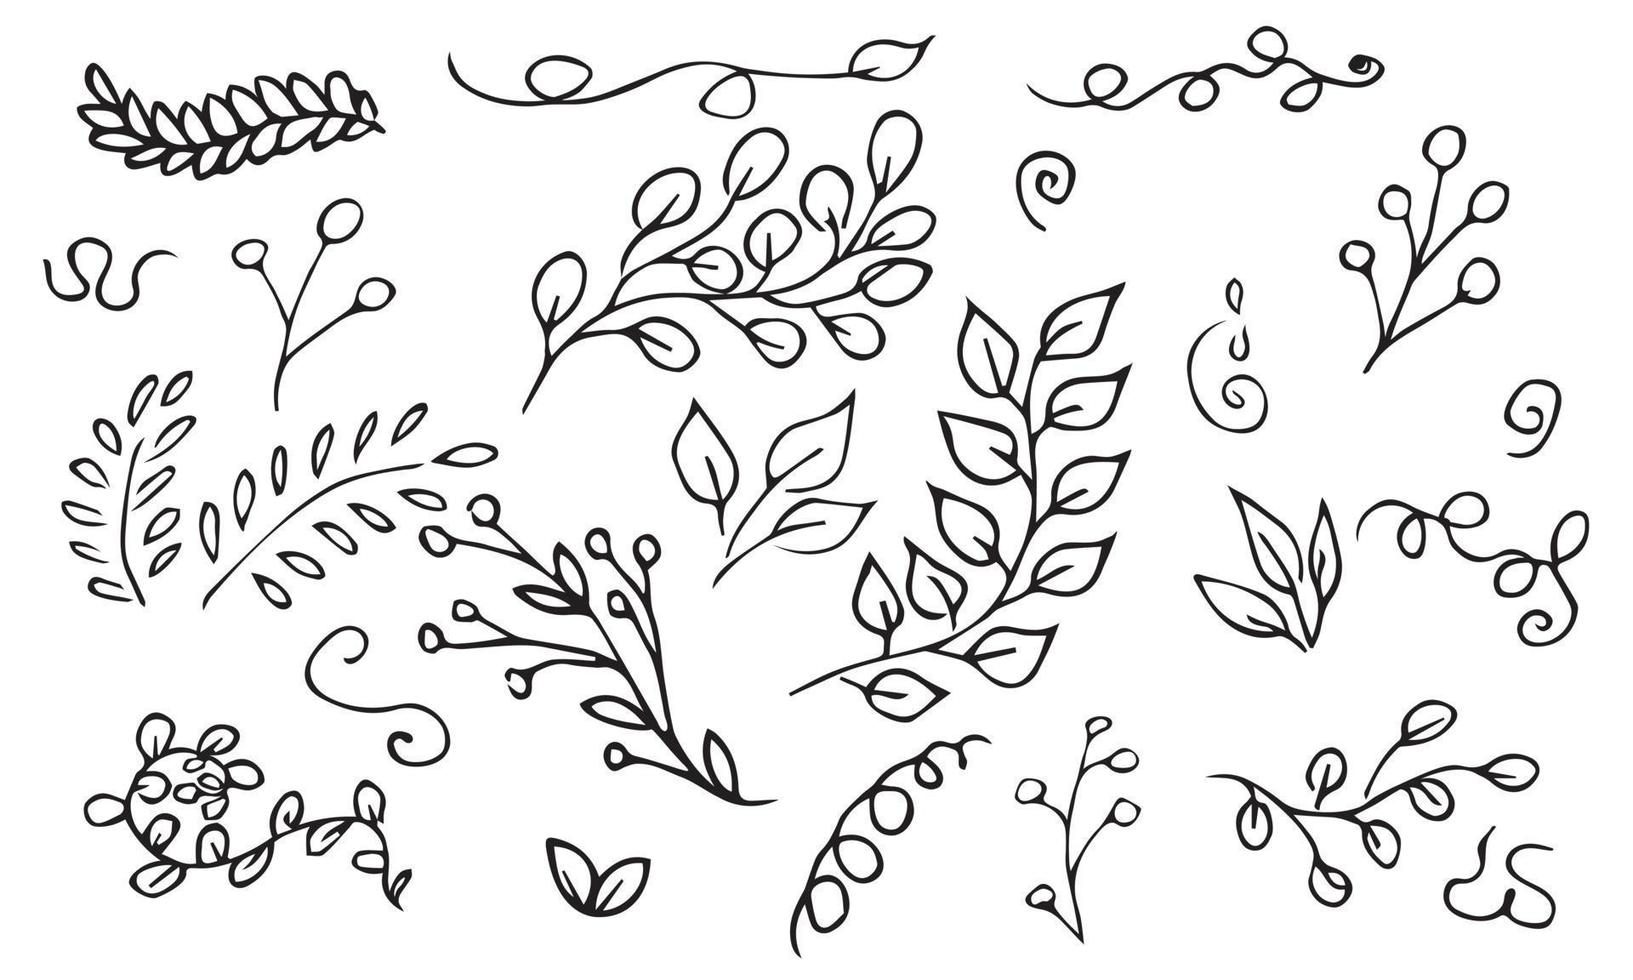 conjunto de vetores desenhados à mão de galhos de árvores e ervas. rabiscos pretos isolados no fundo branco. ilustração botânica para impressão, web, design, decoração, logotipo.